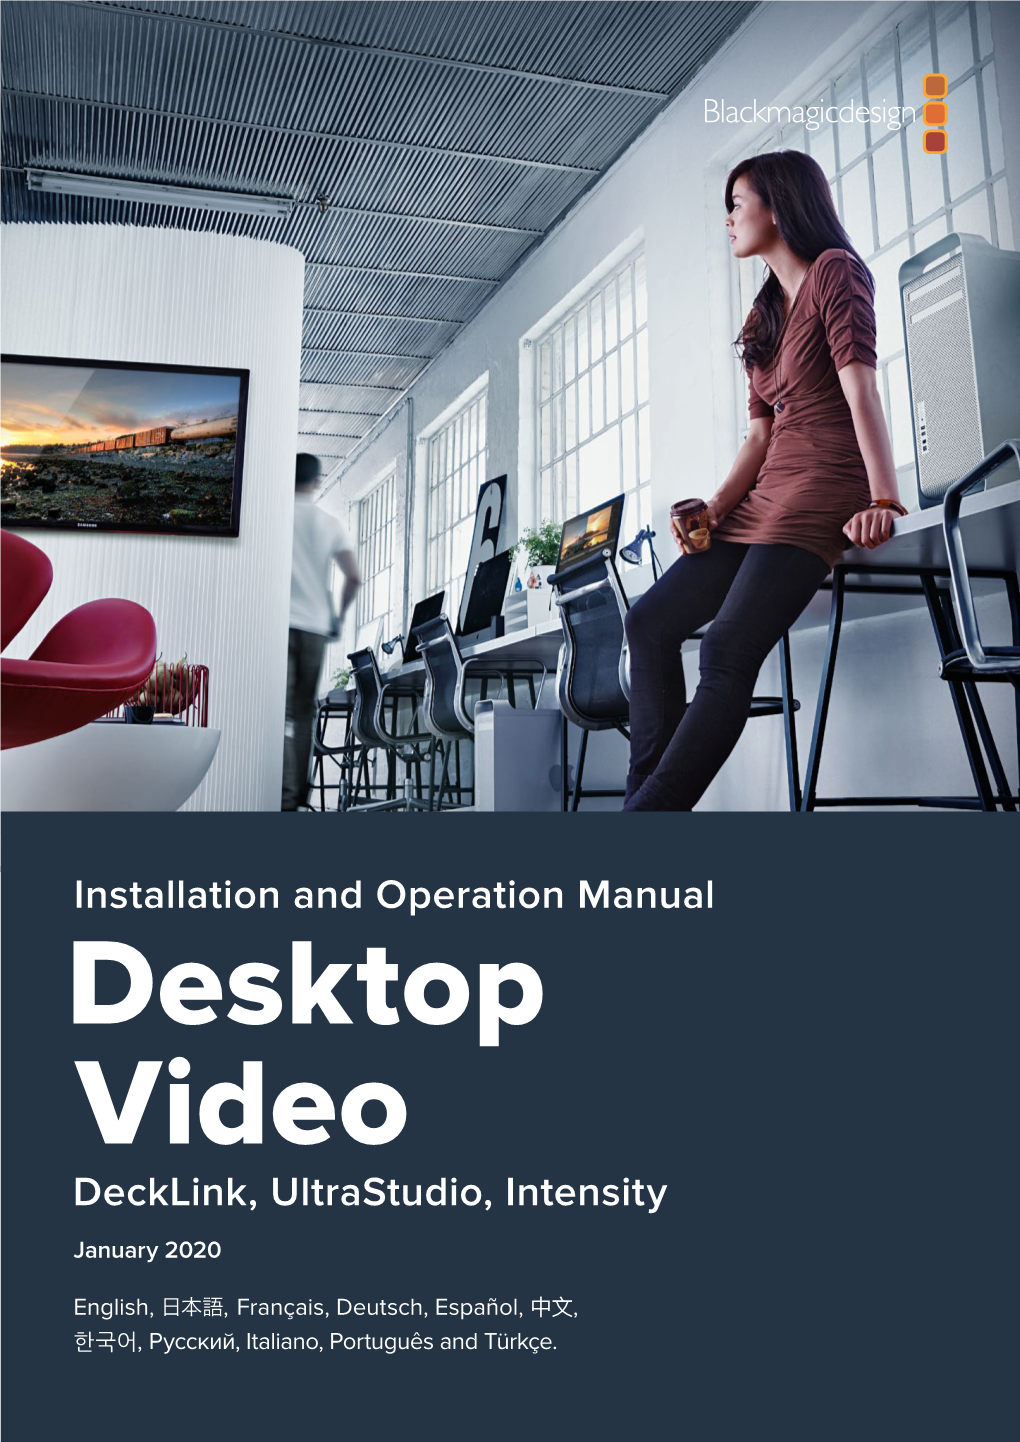 Installation and Operation Manual Decklink, Ultrastudio, Intensity